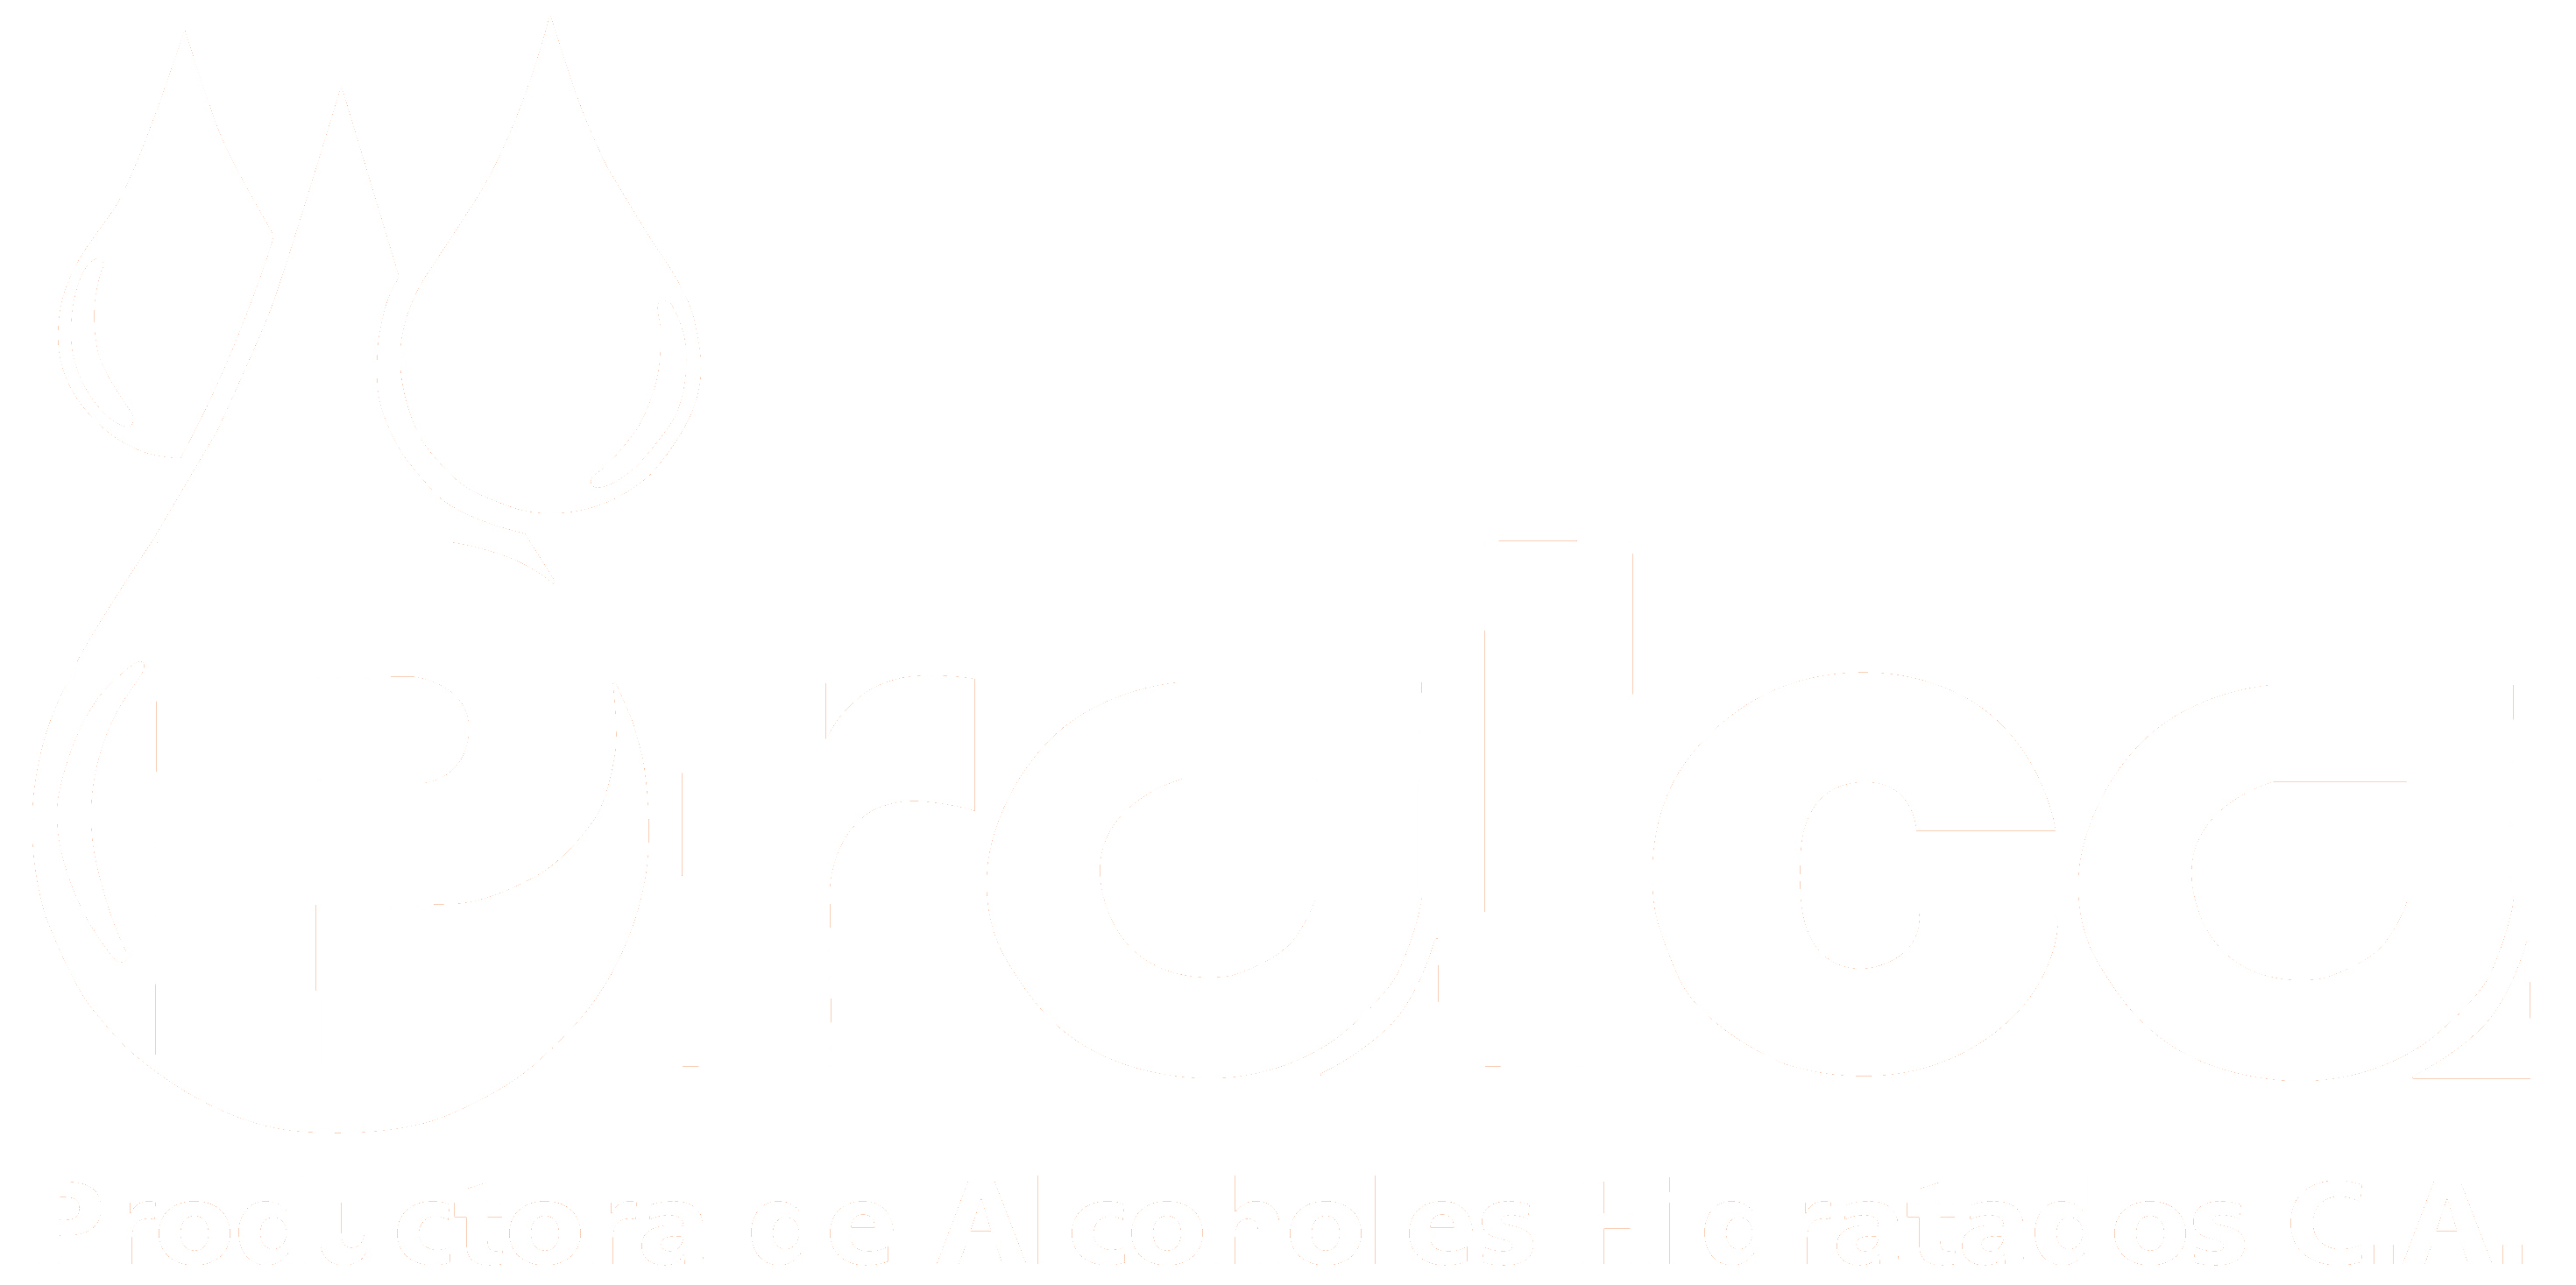 Productora de Alcoholes Hidratados C.A.